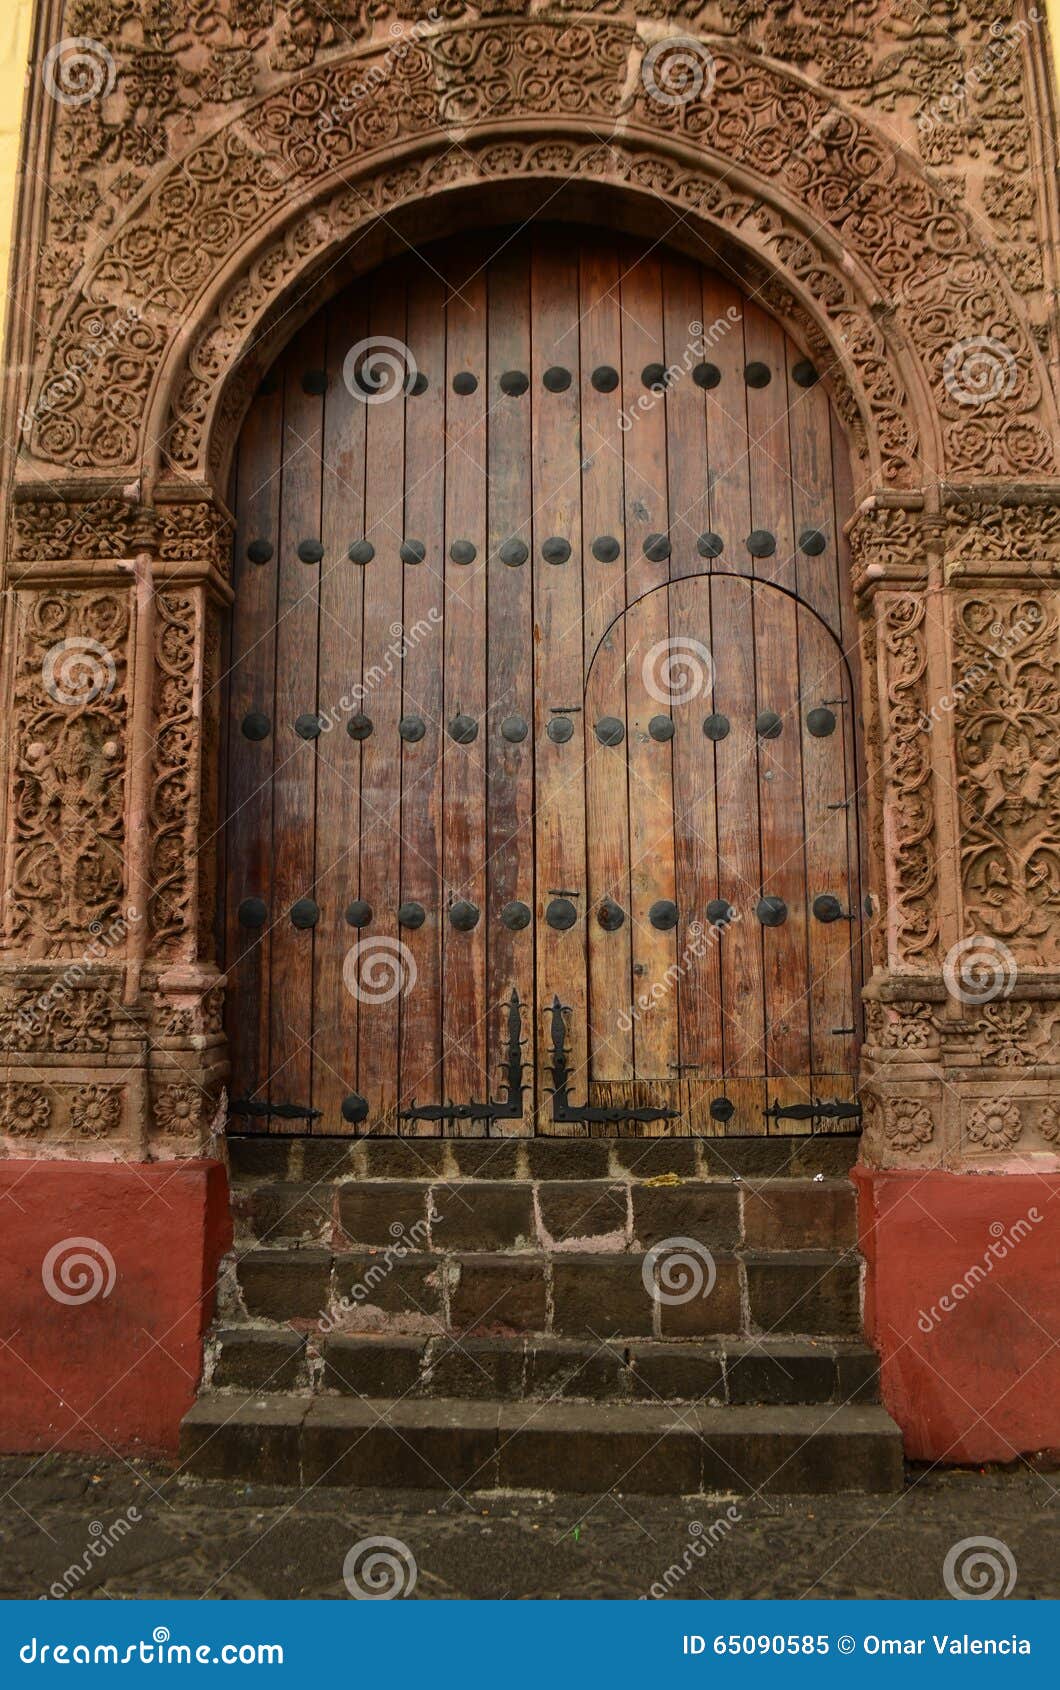 door of huatapera located in uruapan